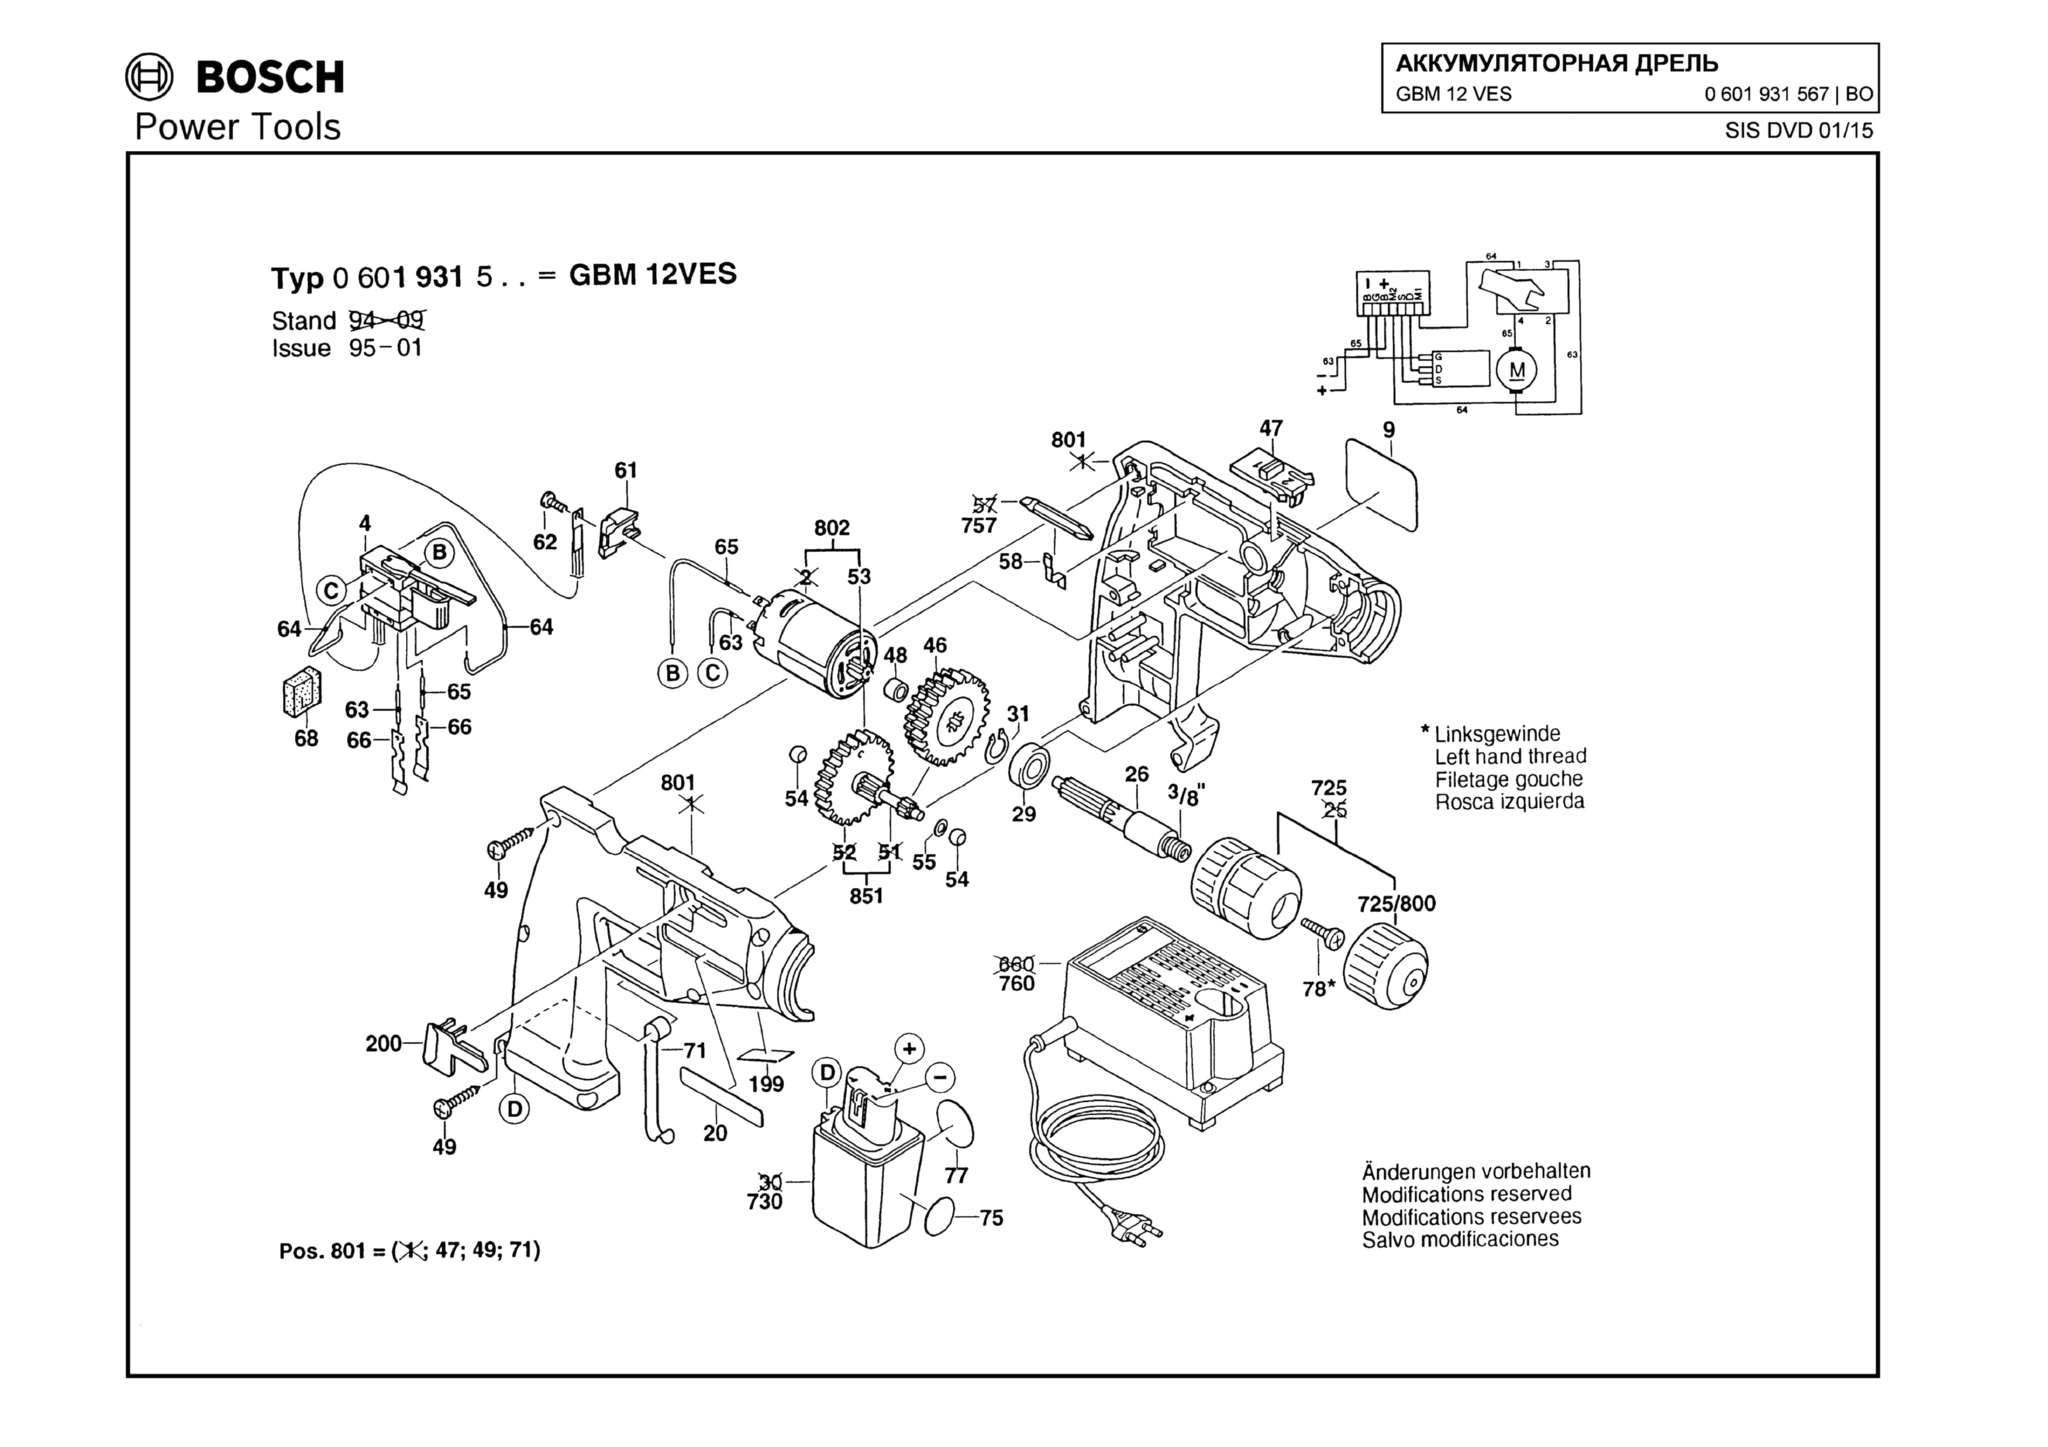 Запчасти, схема и деталировка Bosch GBM 12 VES (ТИП 0601931567)